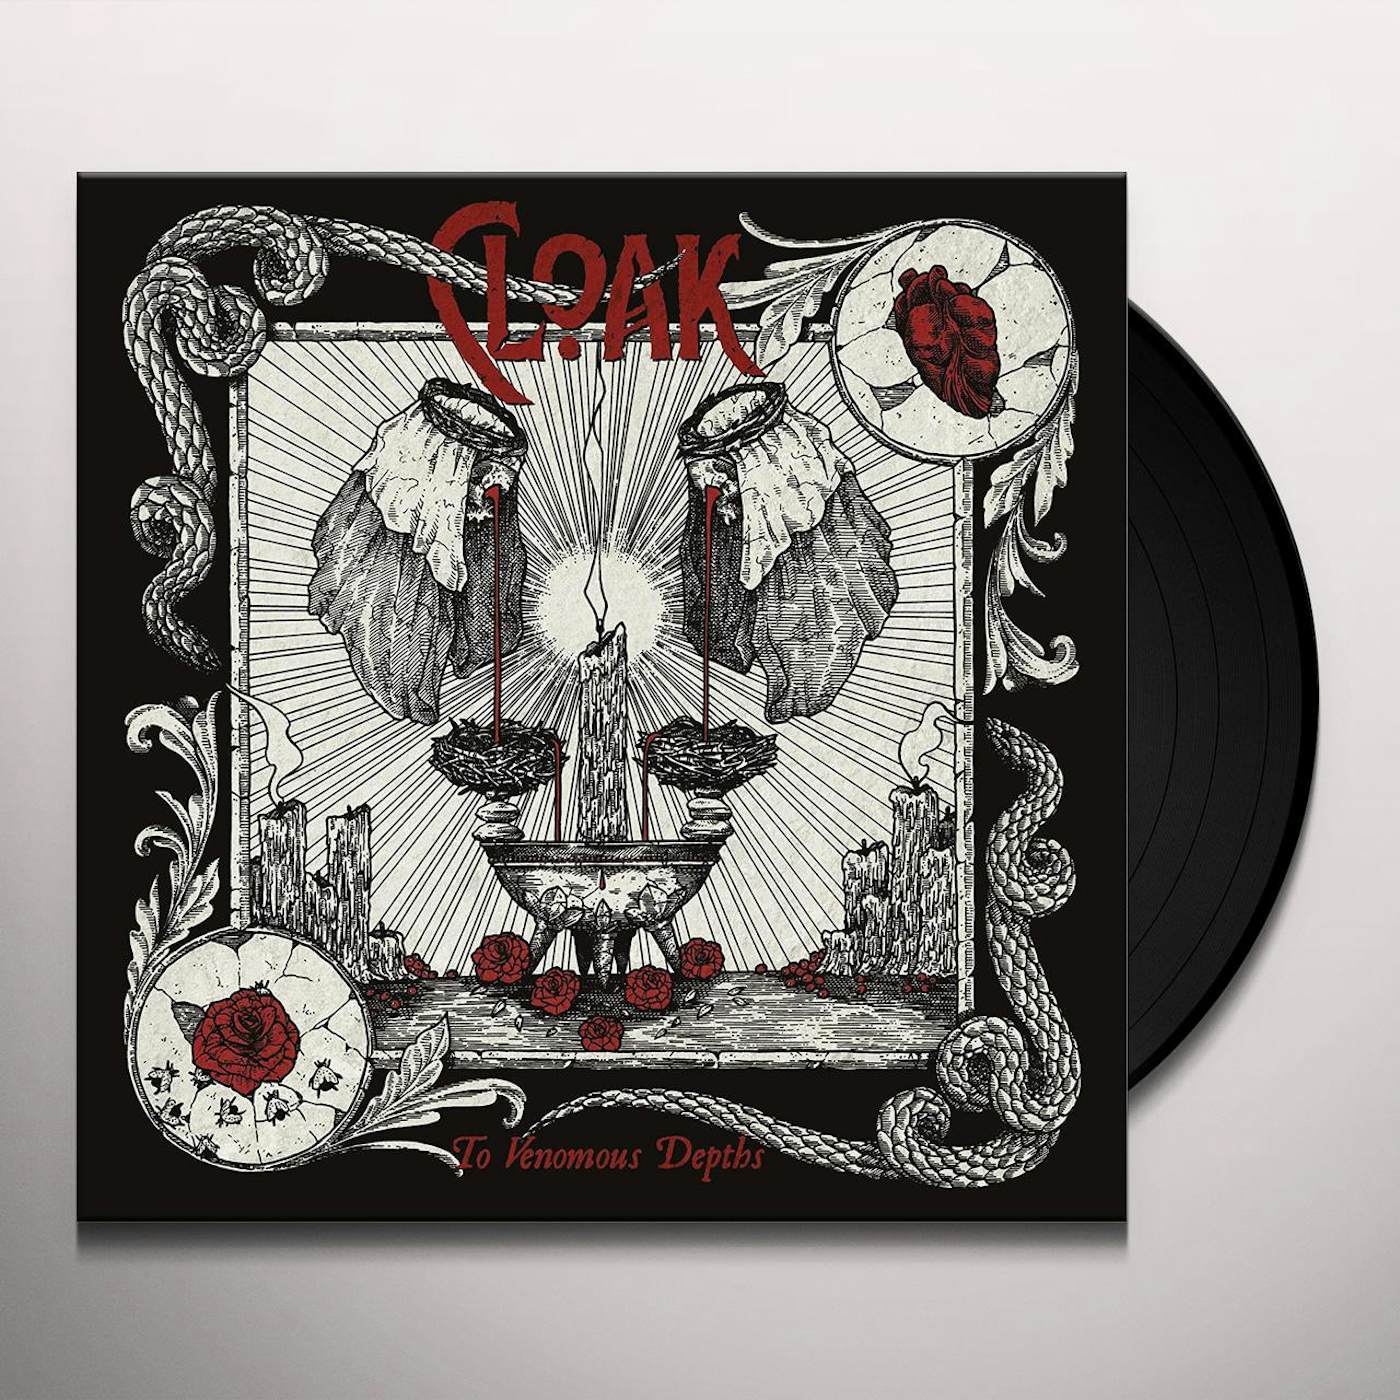 Cloak To Venomous Depths Vinyl Record